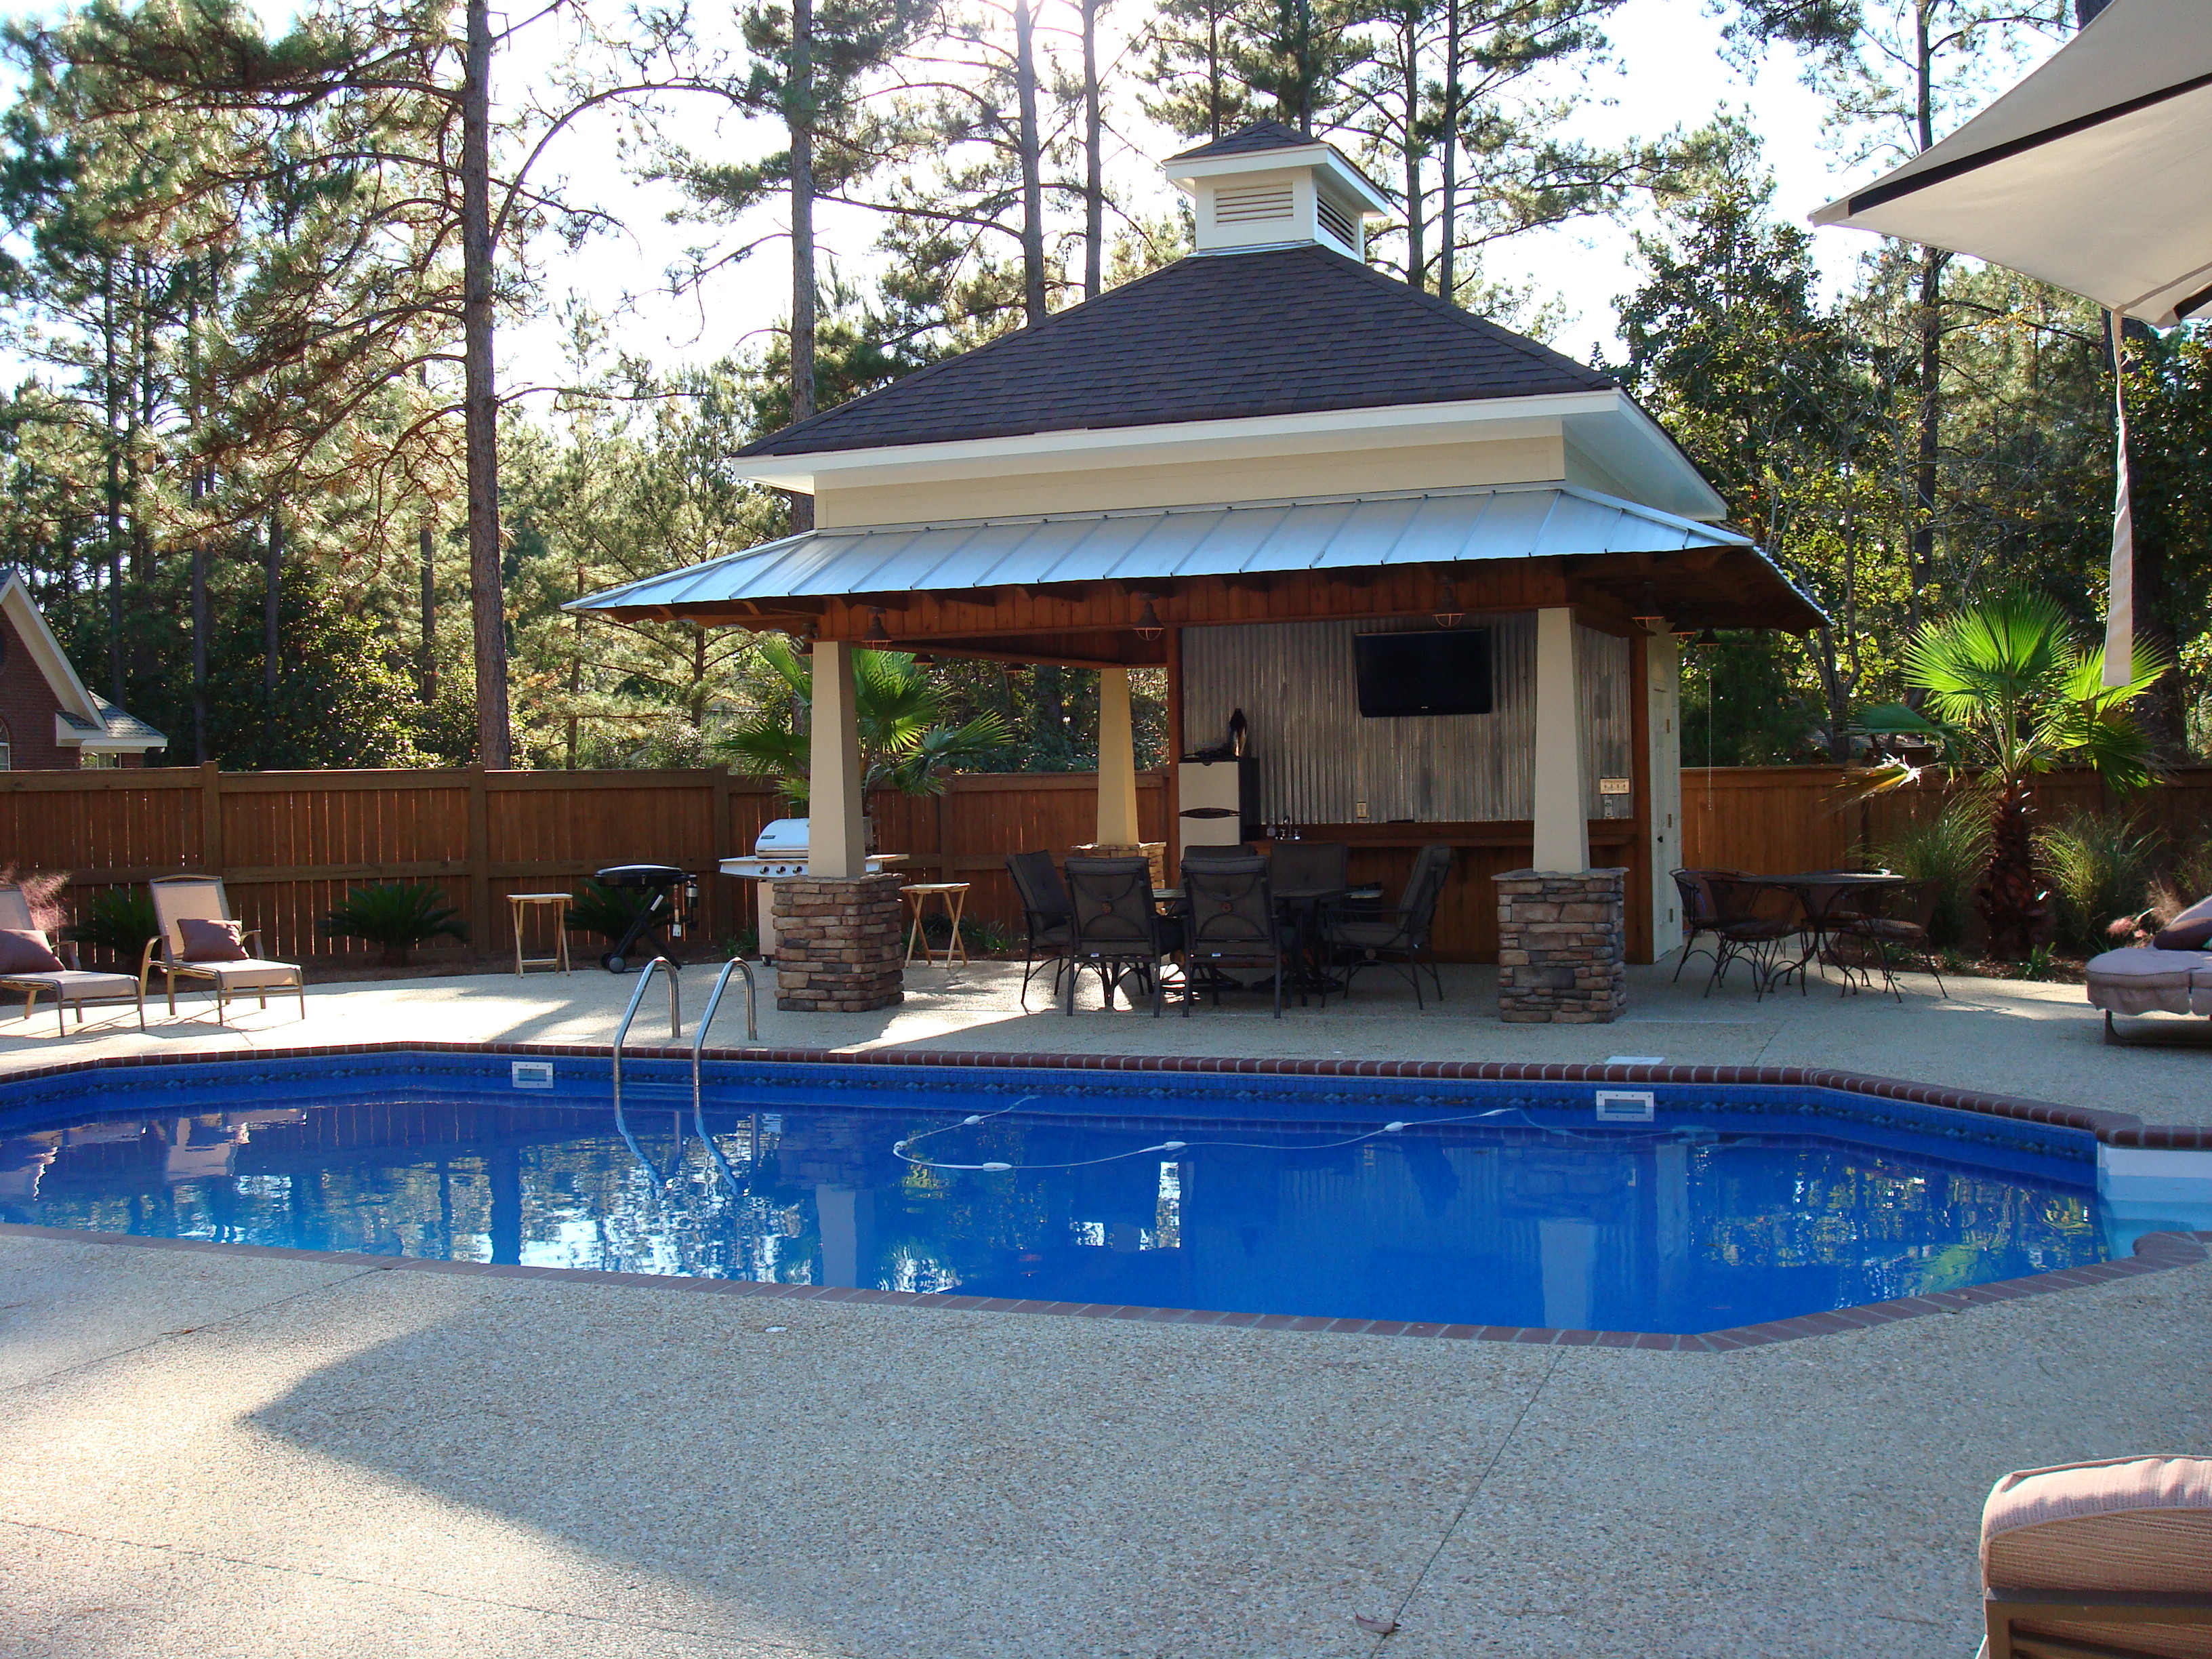 A Pool House